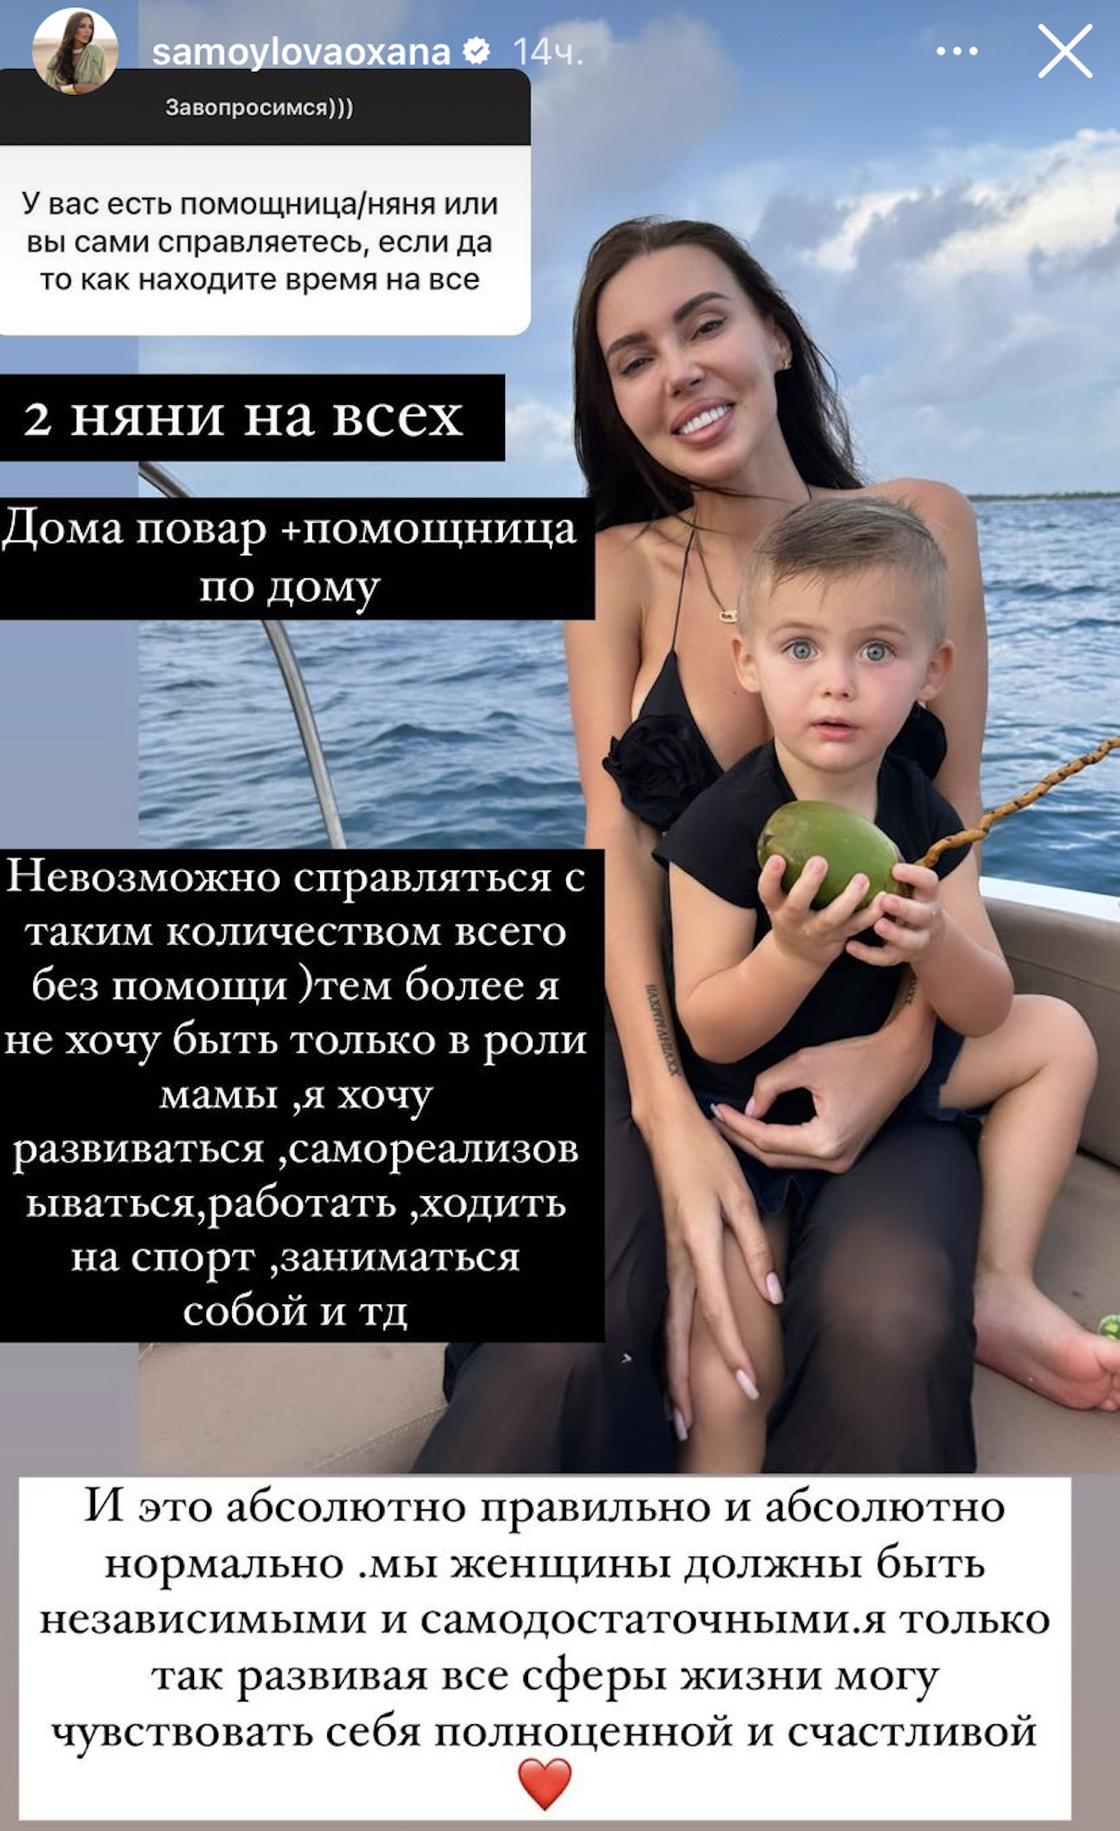 Оксана Самойлова с сыном